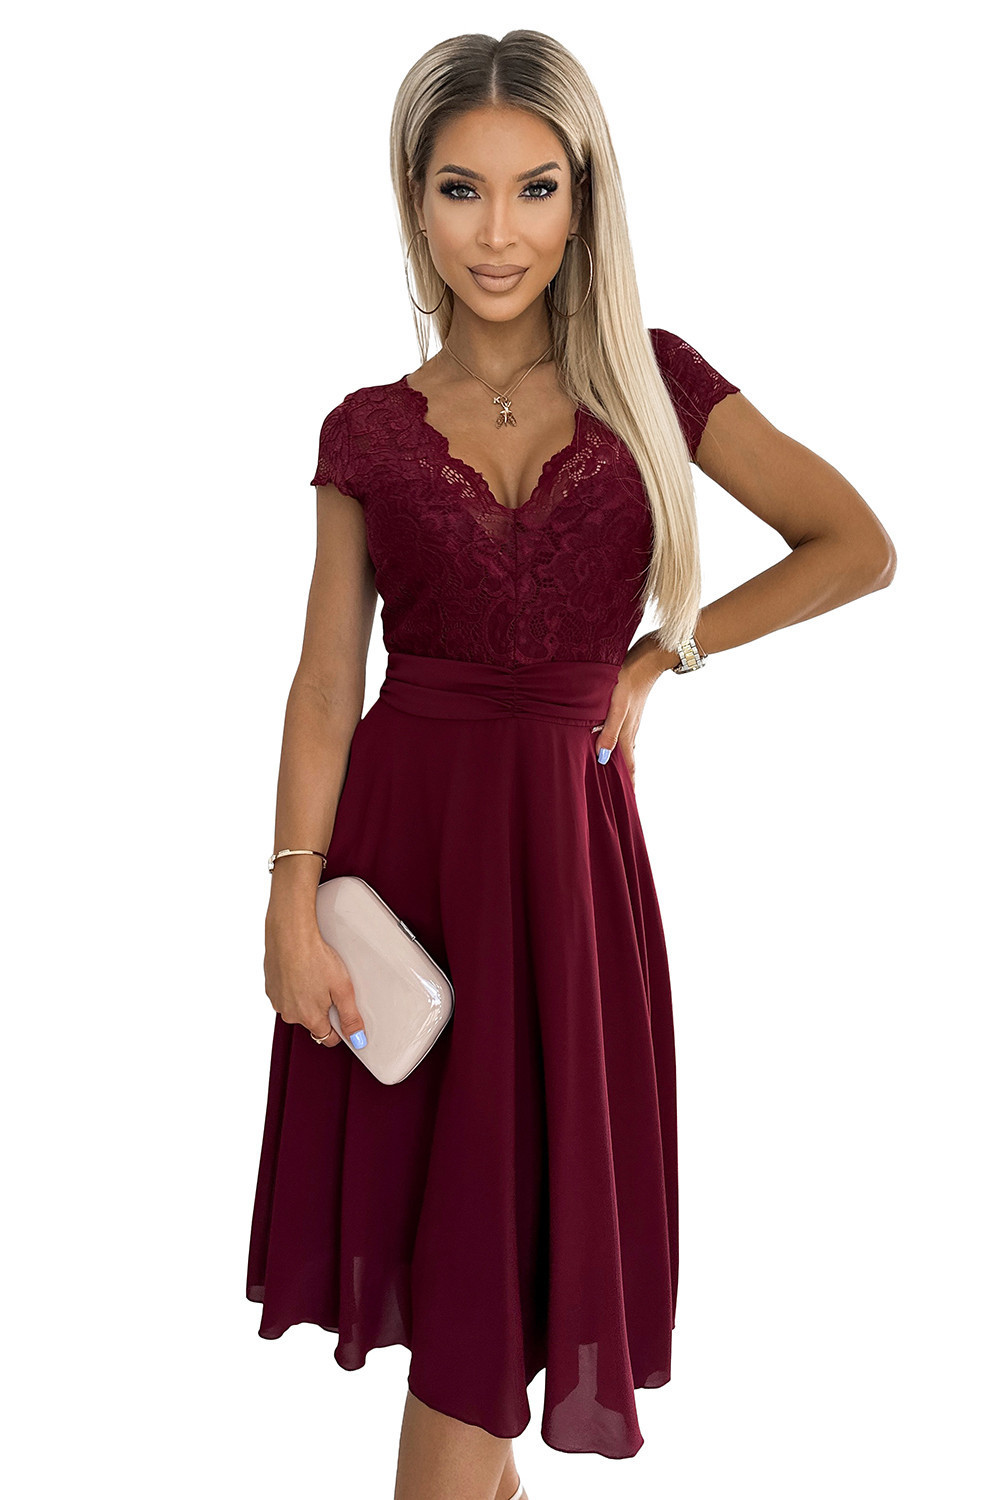 LINDA - Dámské šifonové šaty ve vínové bordó barvě s krajkovým výstřihem 381-5 S